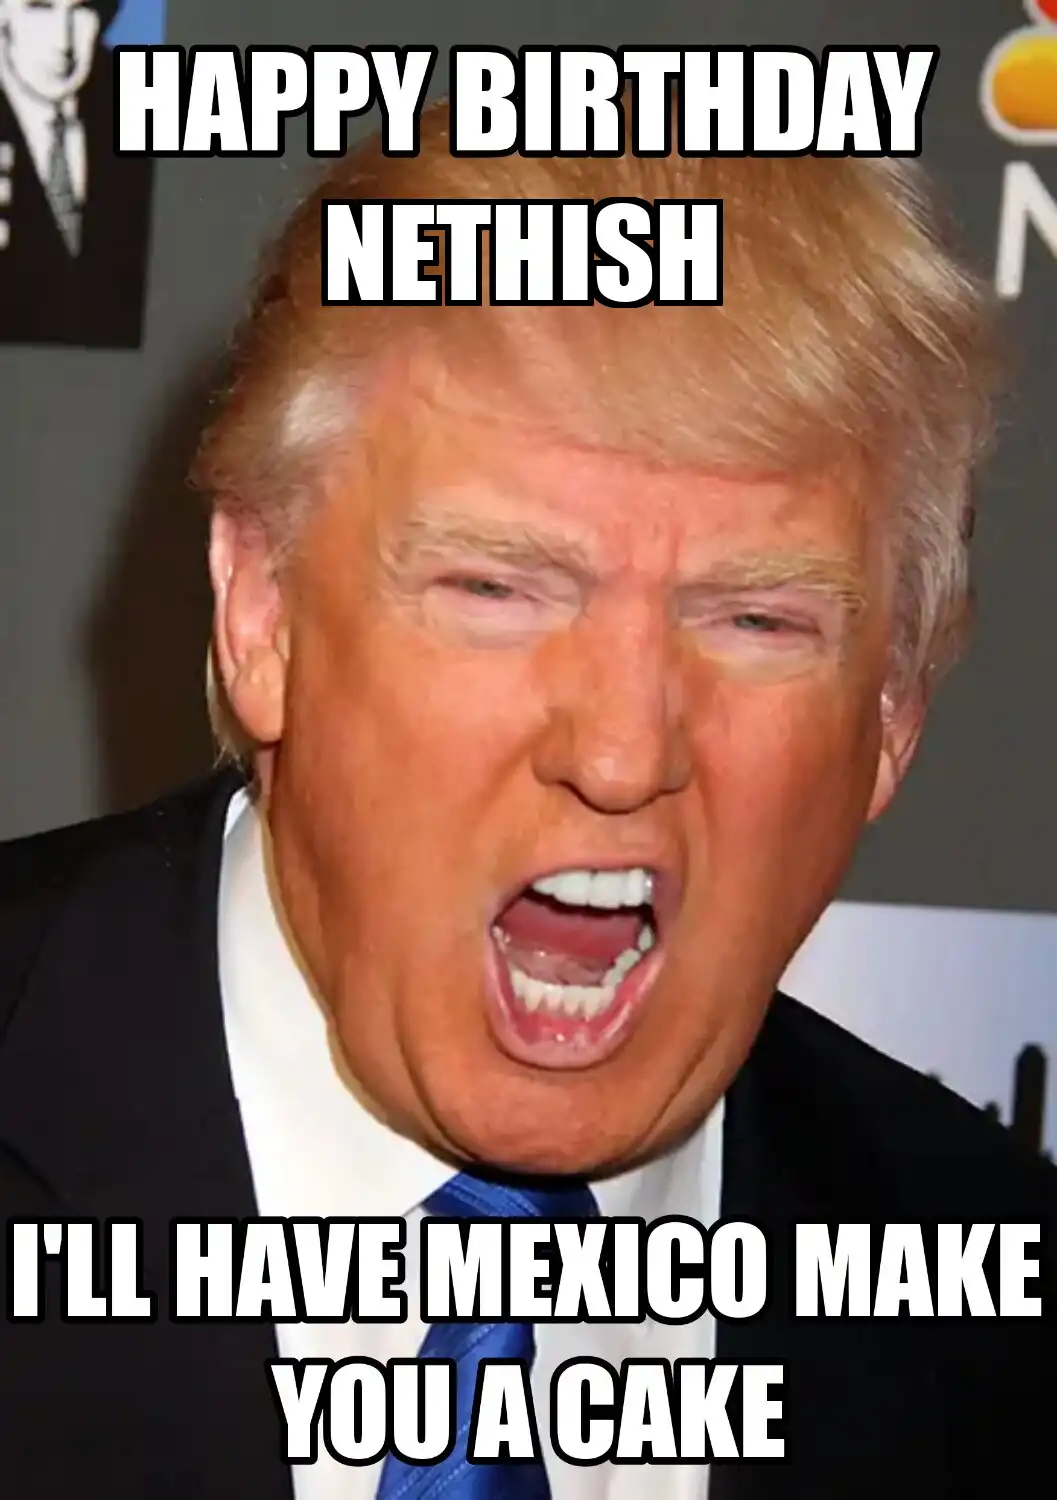 Happy Birthday Nethish Mexico Make You A Cake Meme